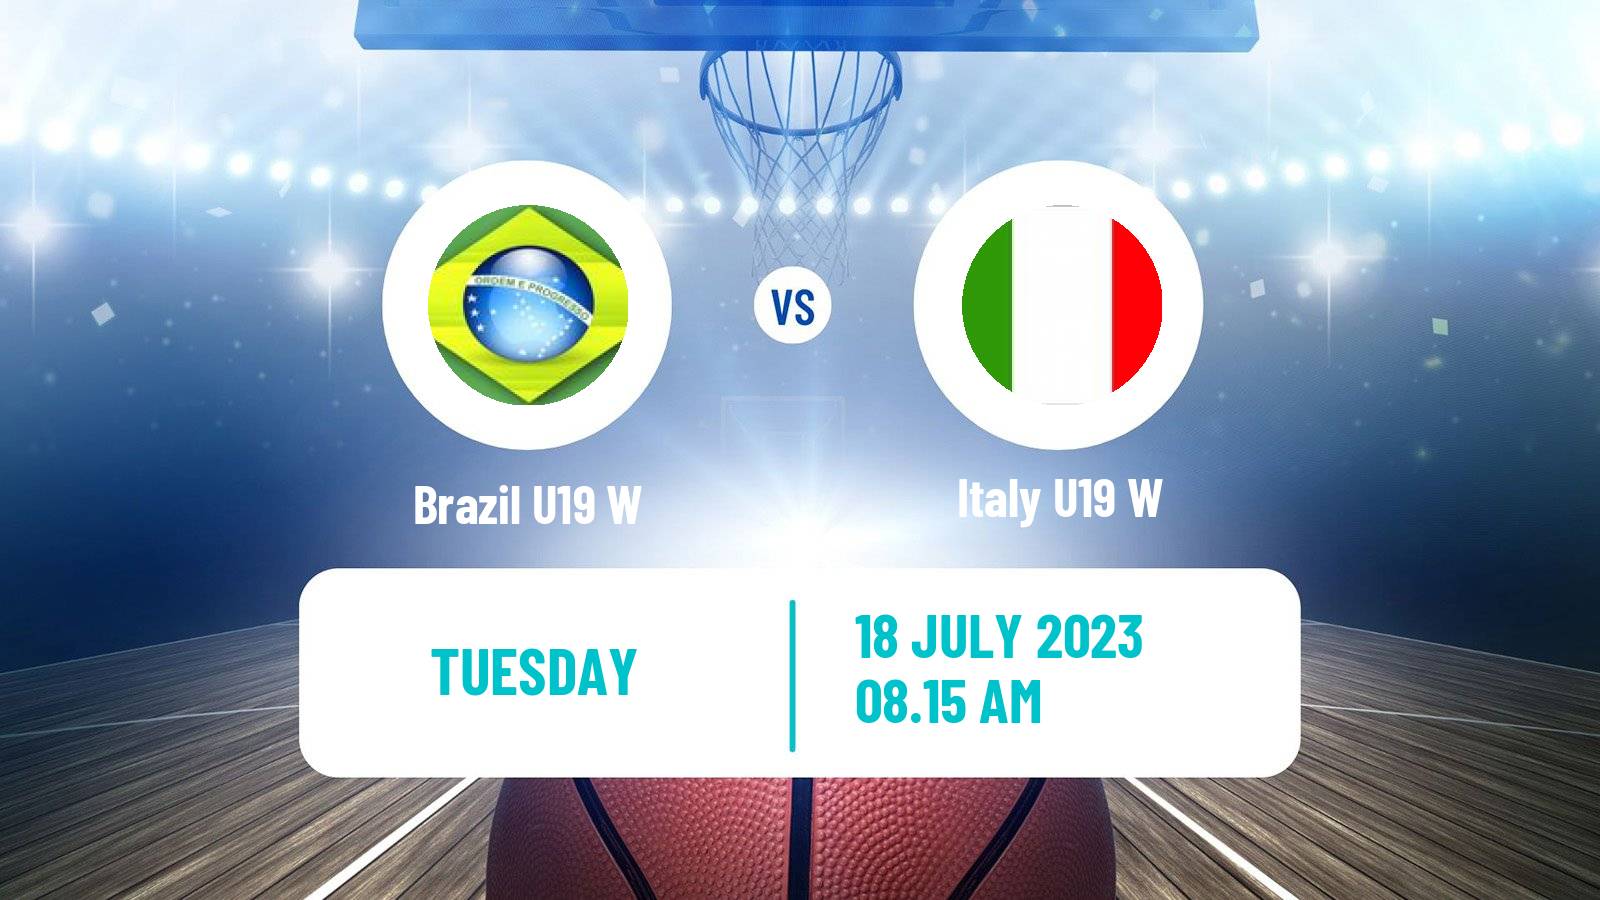 Basketball World Championship U19 Basketball Women Brazil U19 W - Italy U19 W